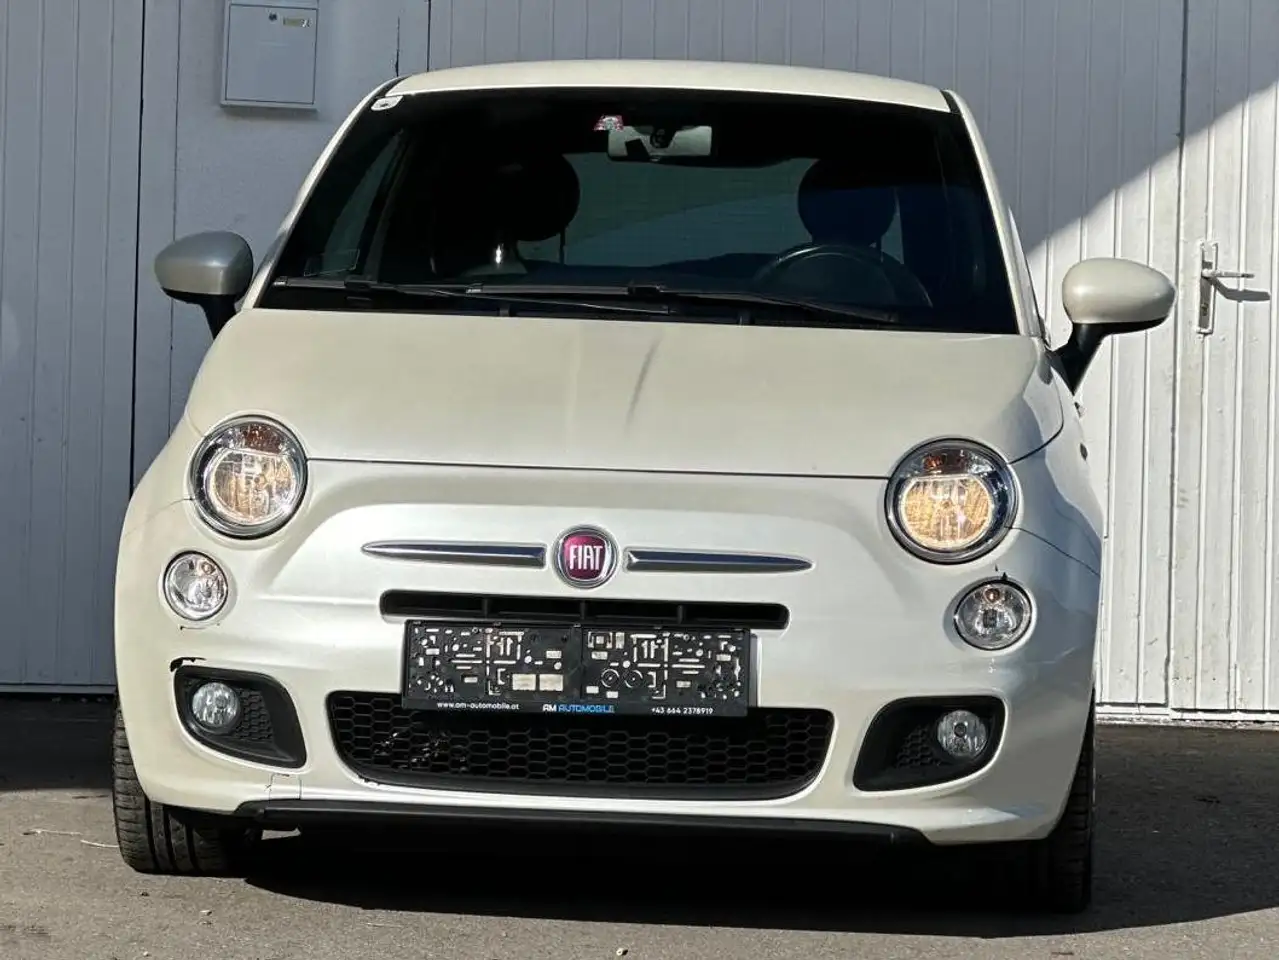 Fiat 500 Stadswagen in Wit tweedehands in Hohenems voor € 7.699,-